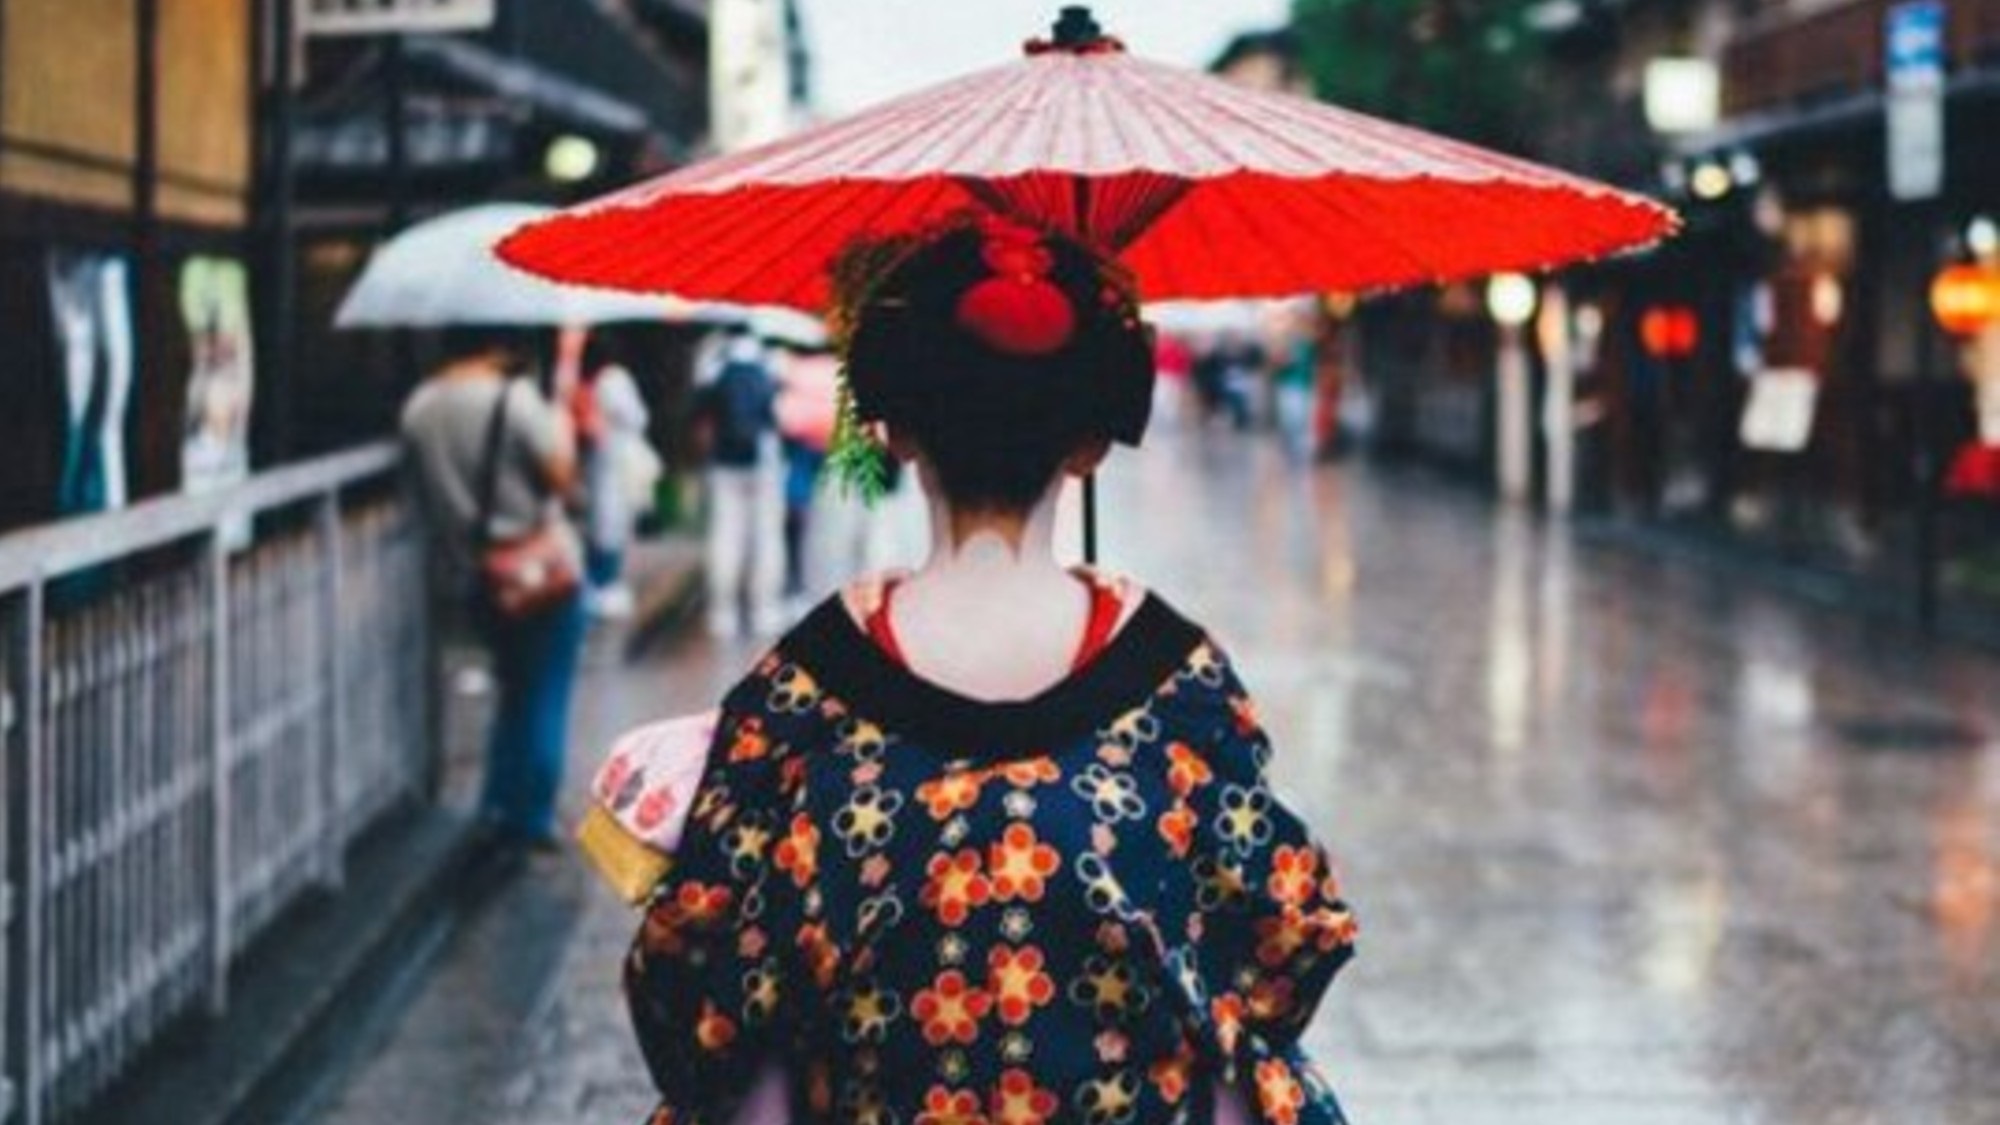 【祇園・東山】祇園周辺に行くと見かける舞妓さん。舞妓は20歳までの呼称。それ以降は芸妓となる